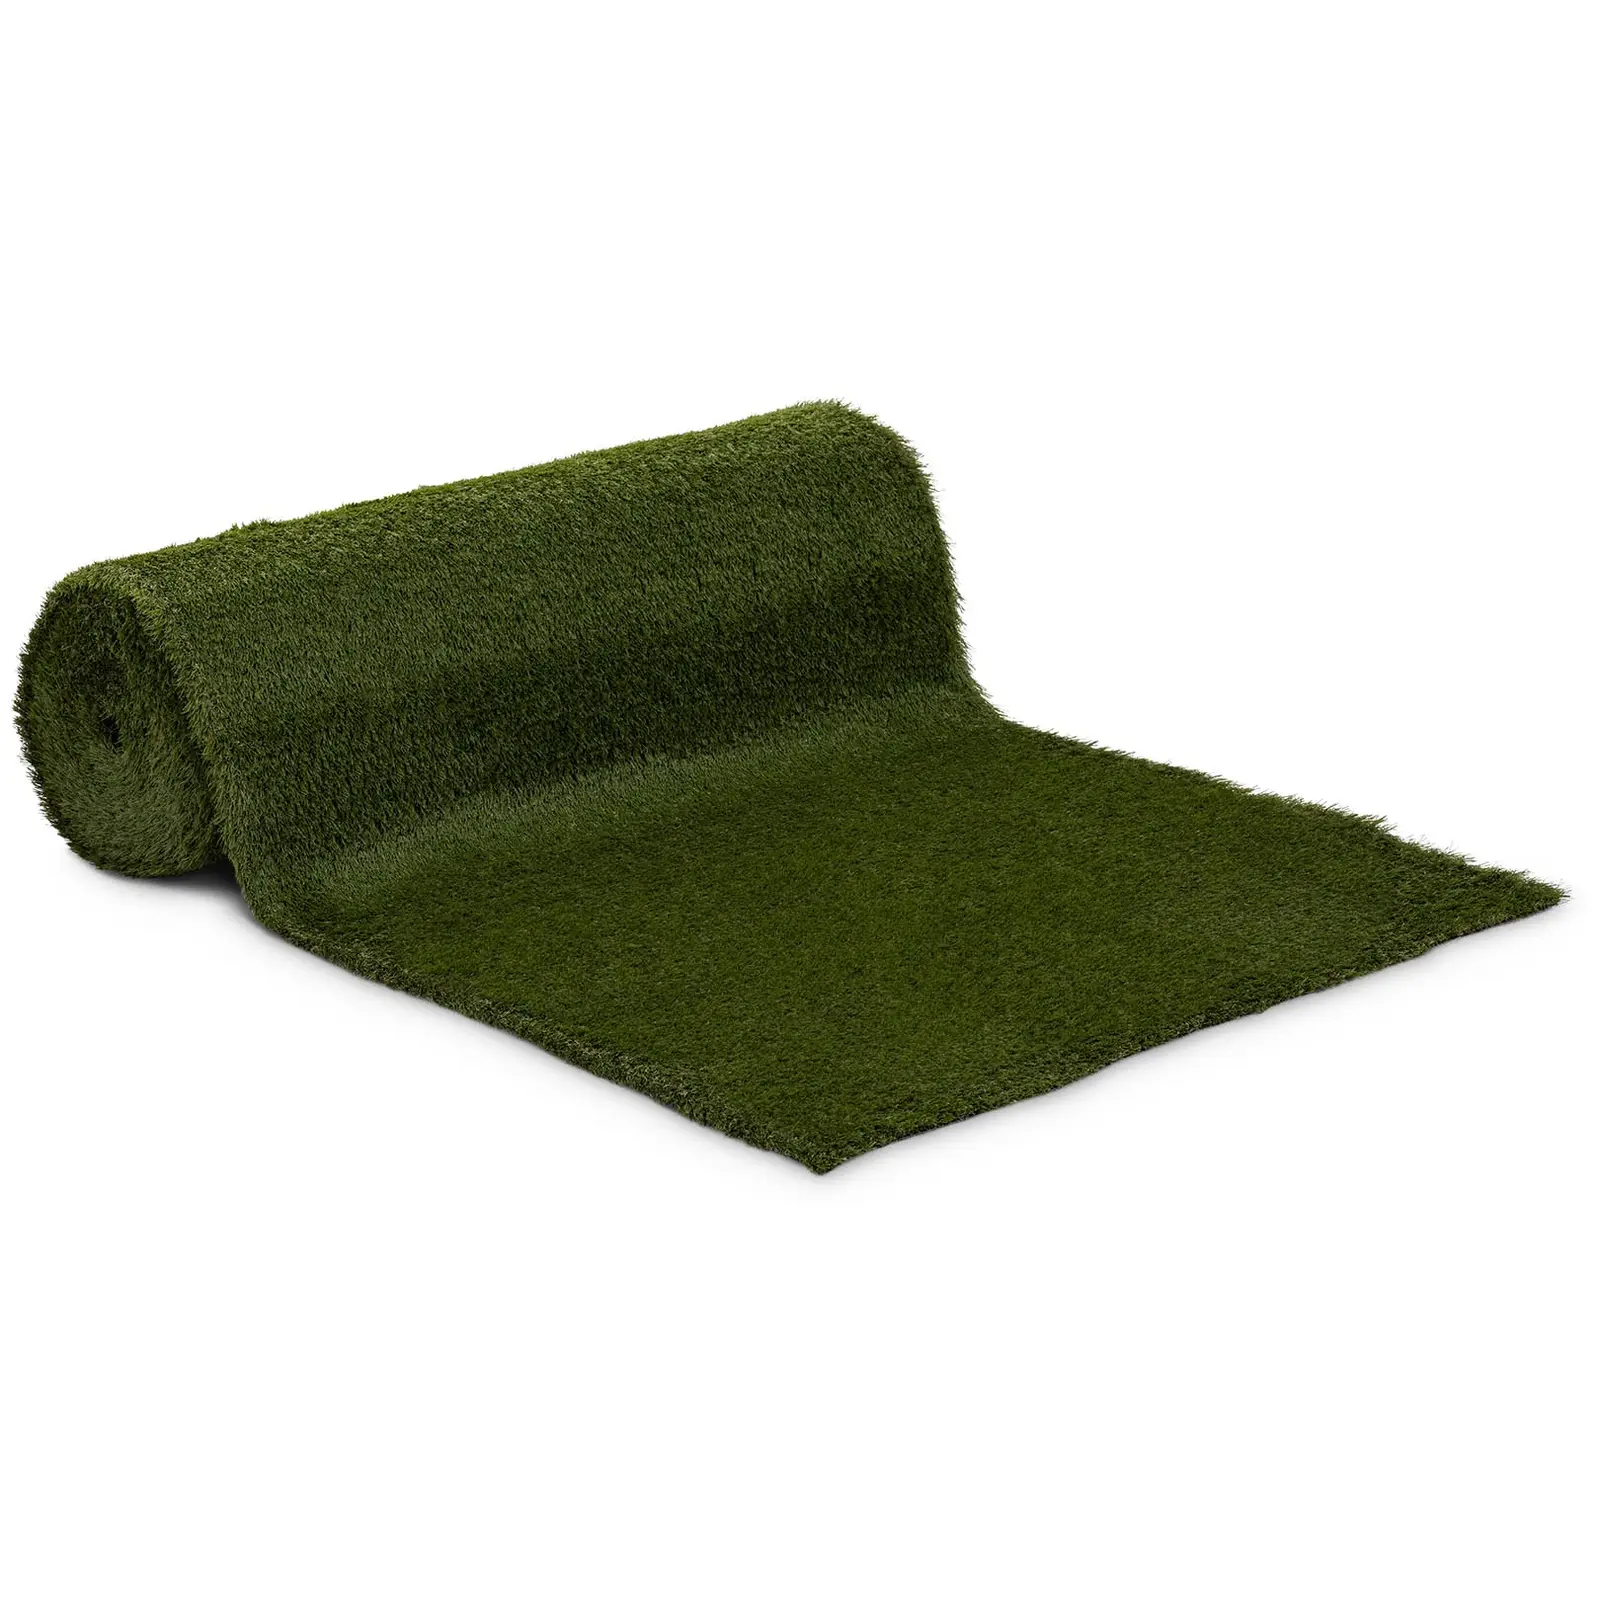 Sztuczna trawa - 1008 x 100 cm - wysokość: 30 mm - szybkość ściegu: 20/10 cm - odporność na promieniowanie UV